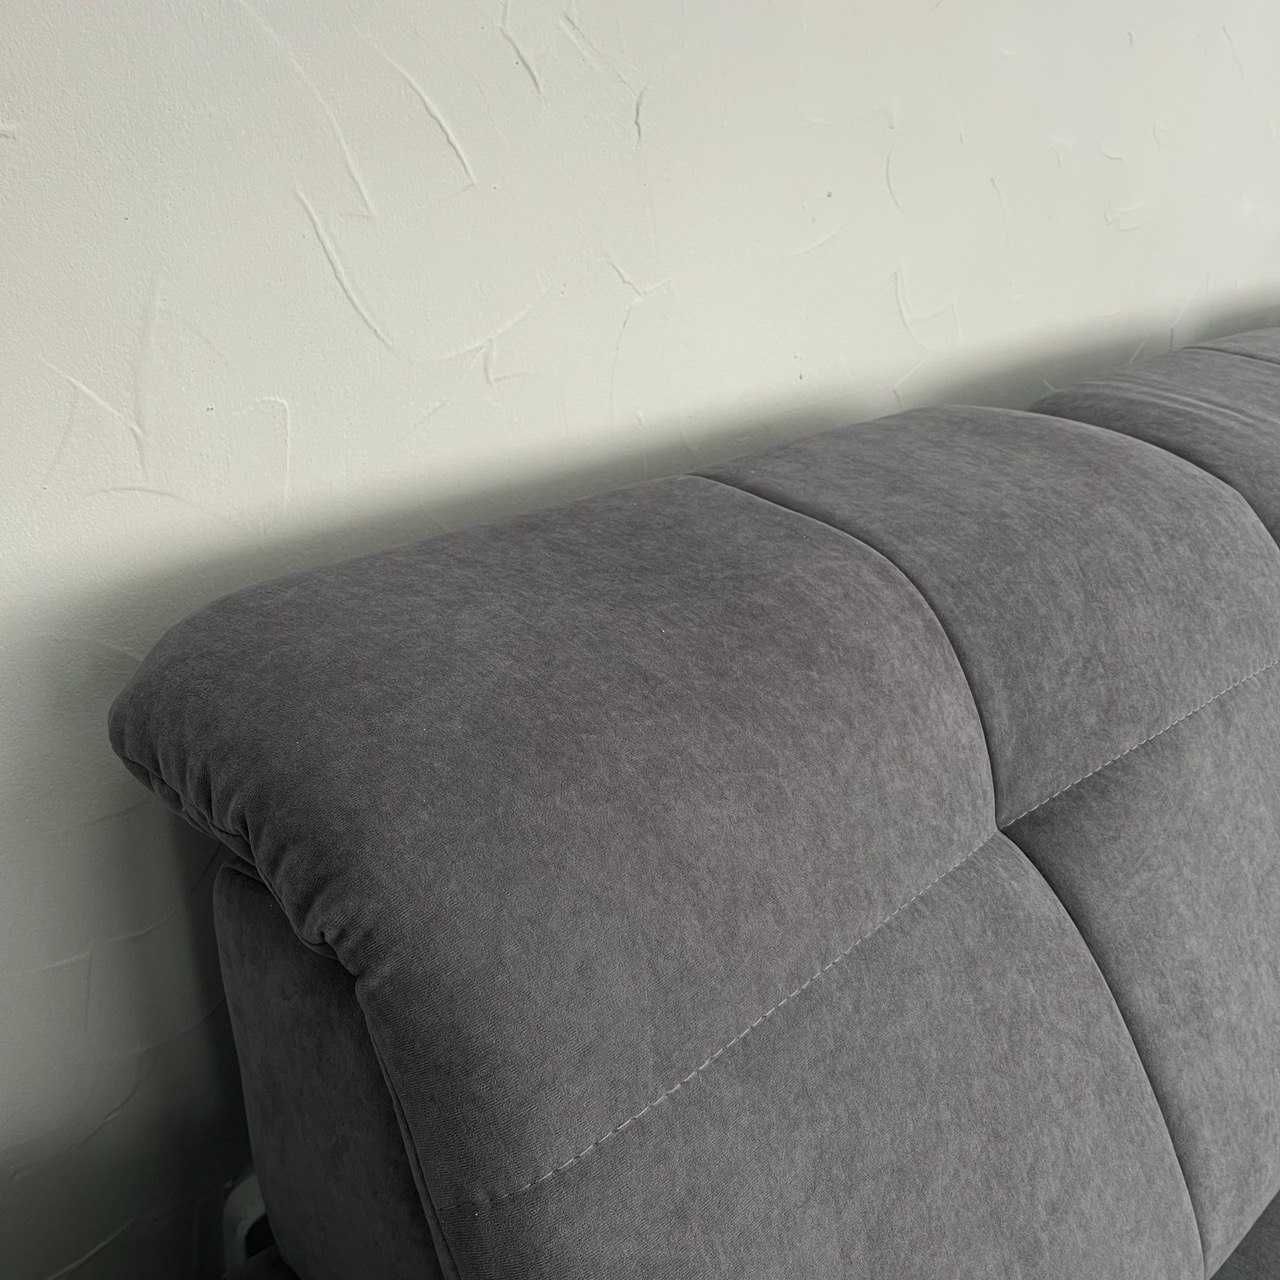 Кутовий диван розкладний диван в тканині